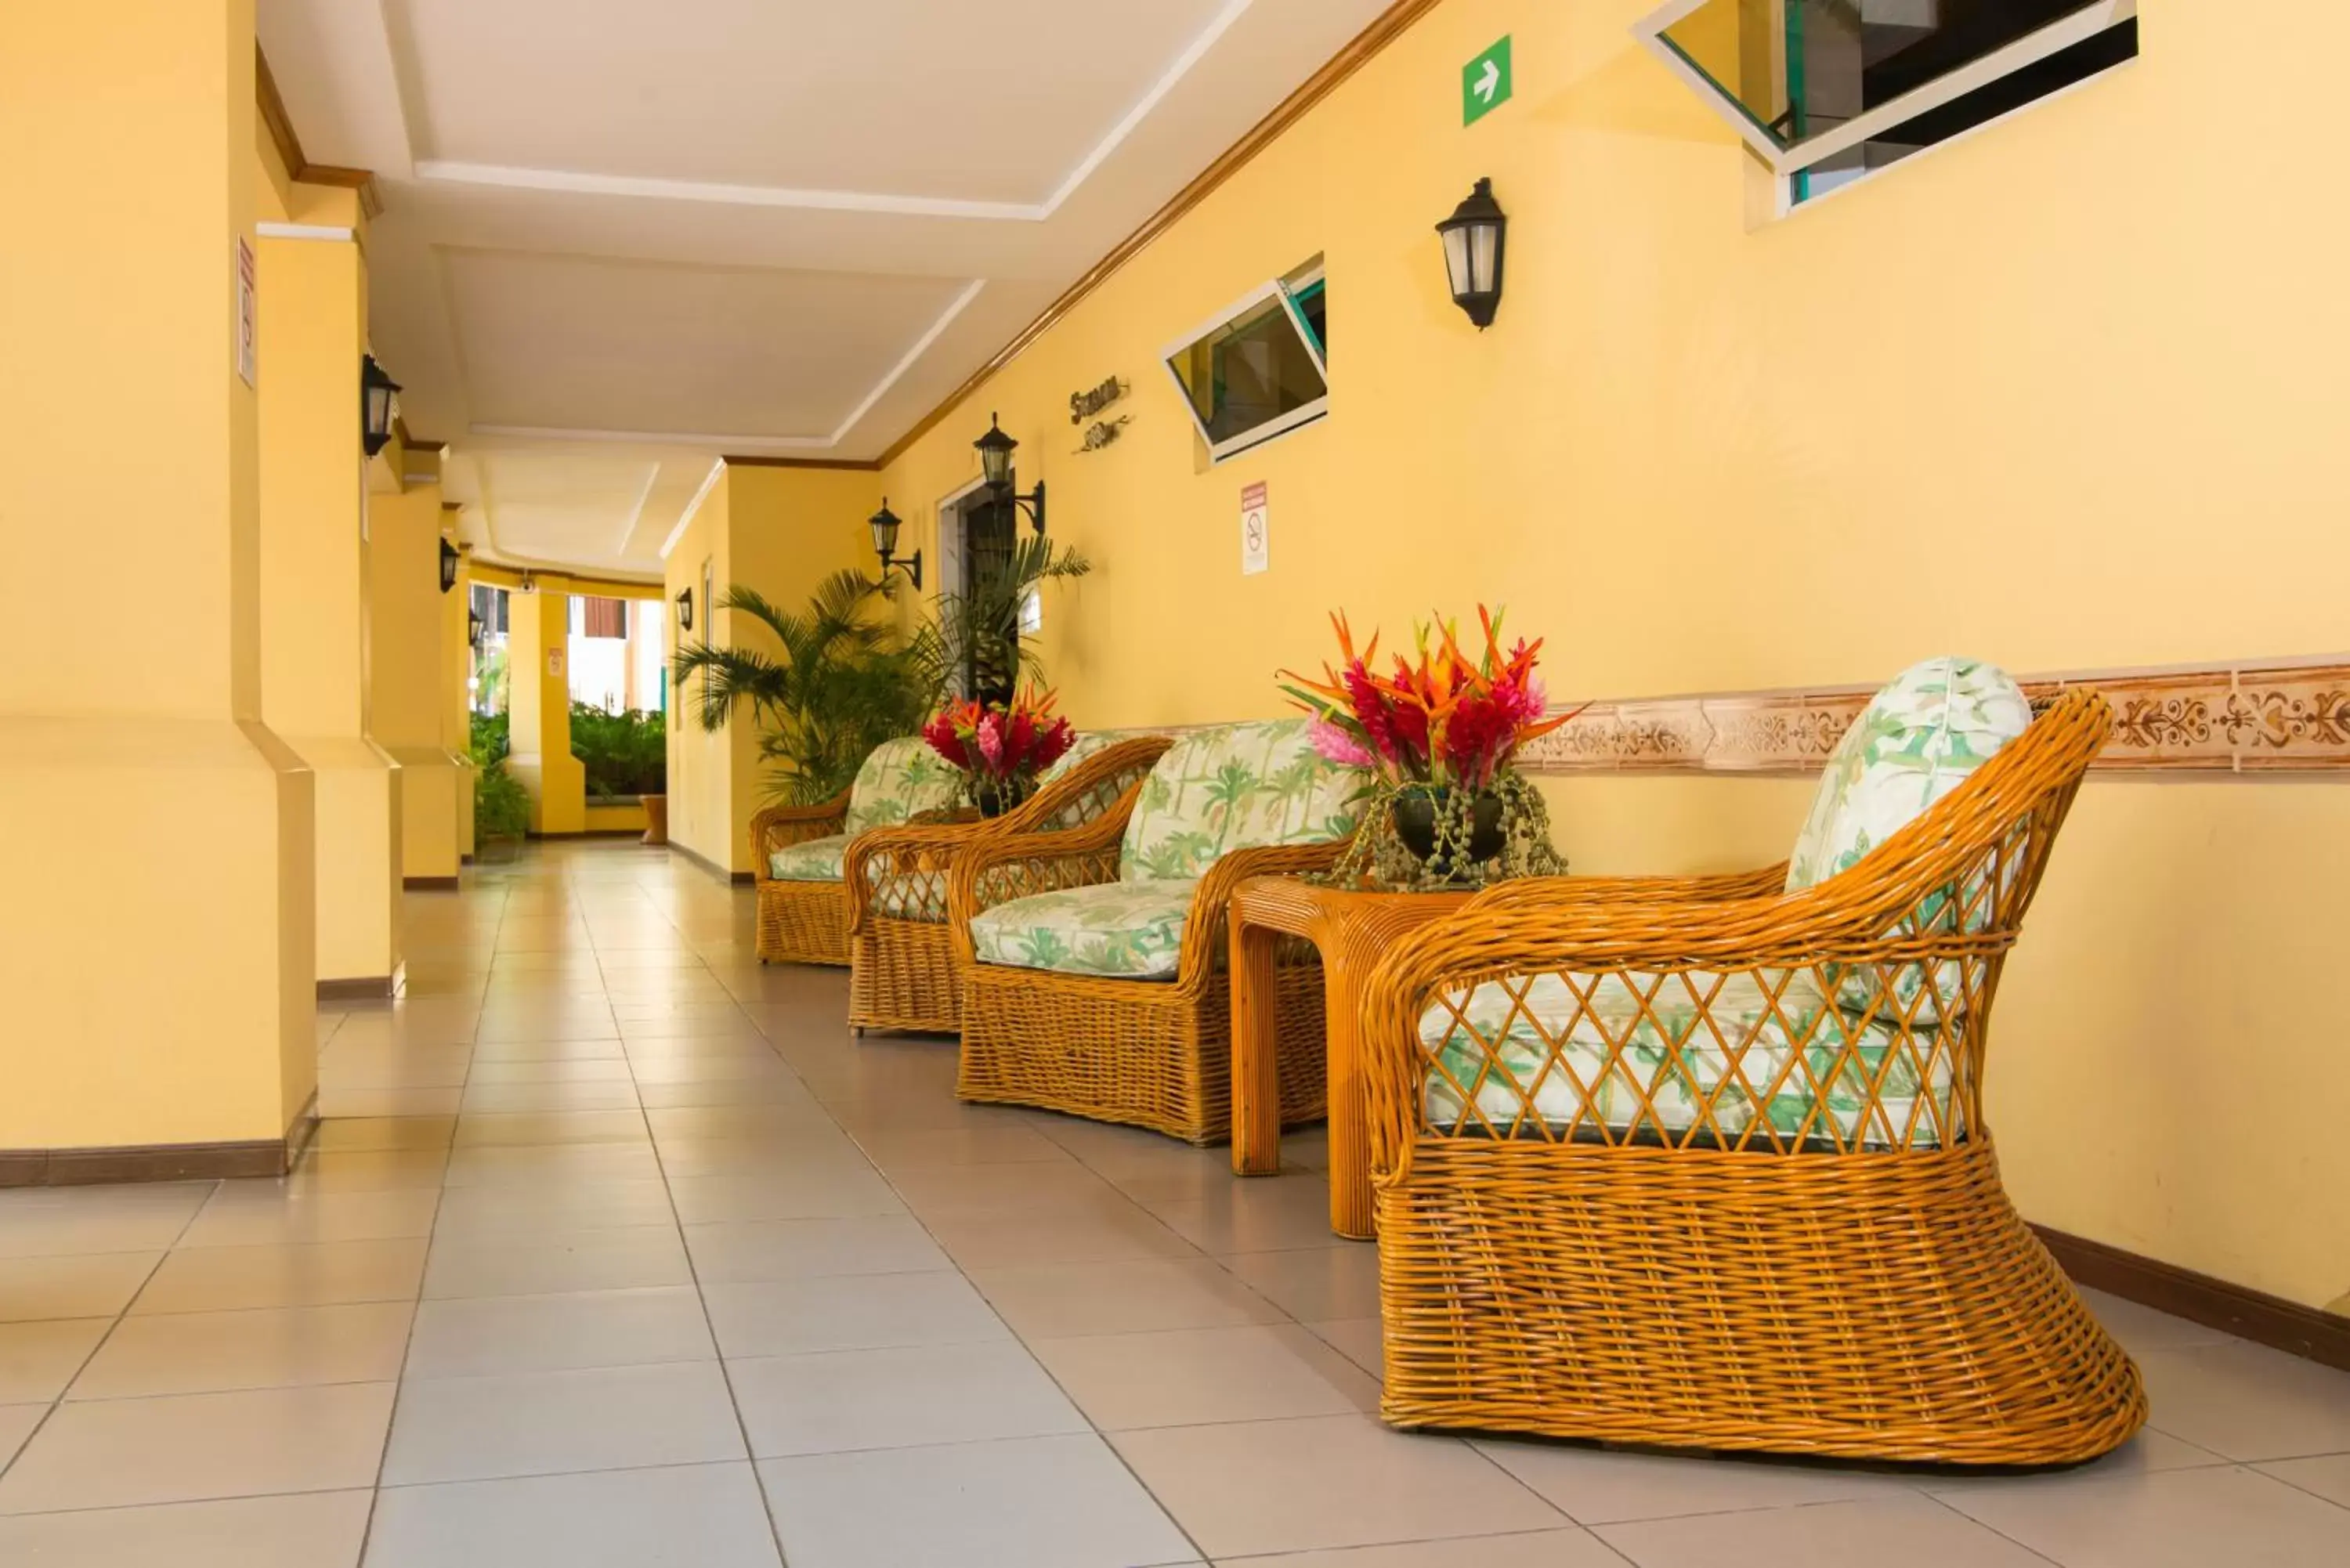 Lobby or reception, Seating Area in Apartotel & Suites Villas del Rio